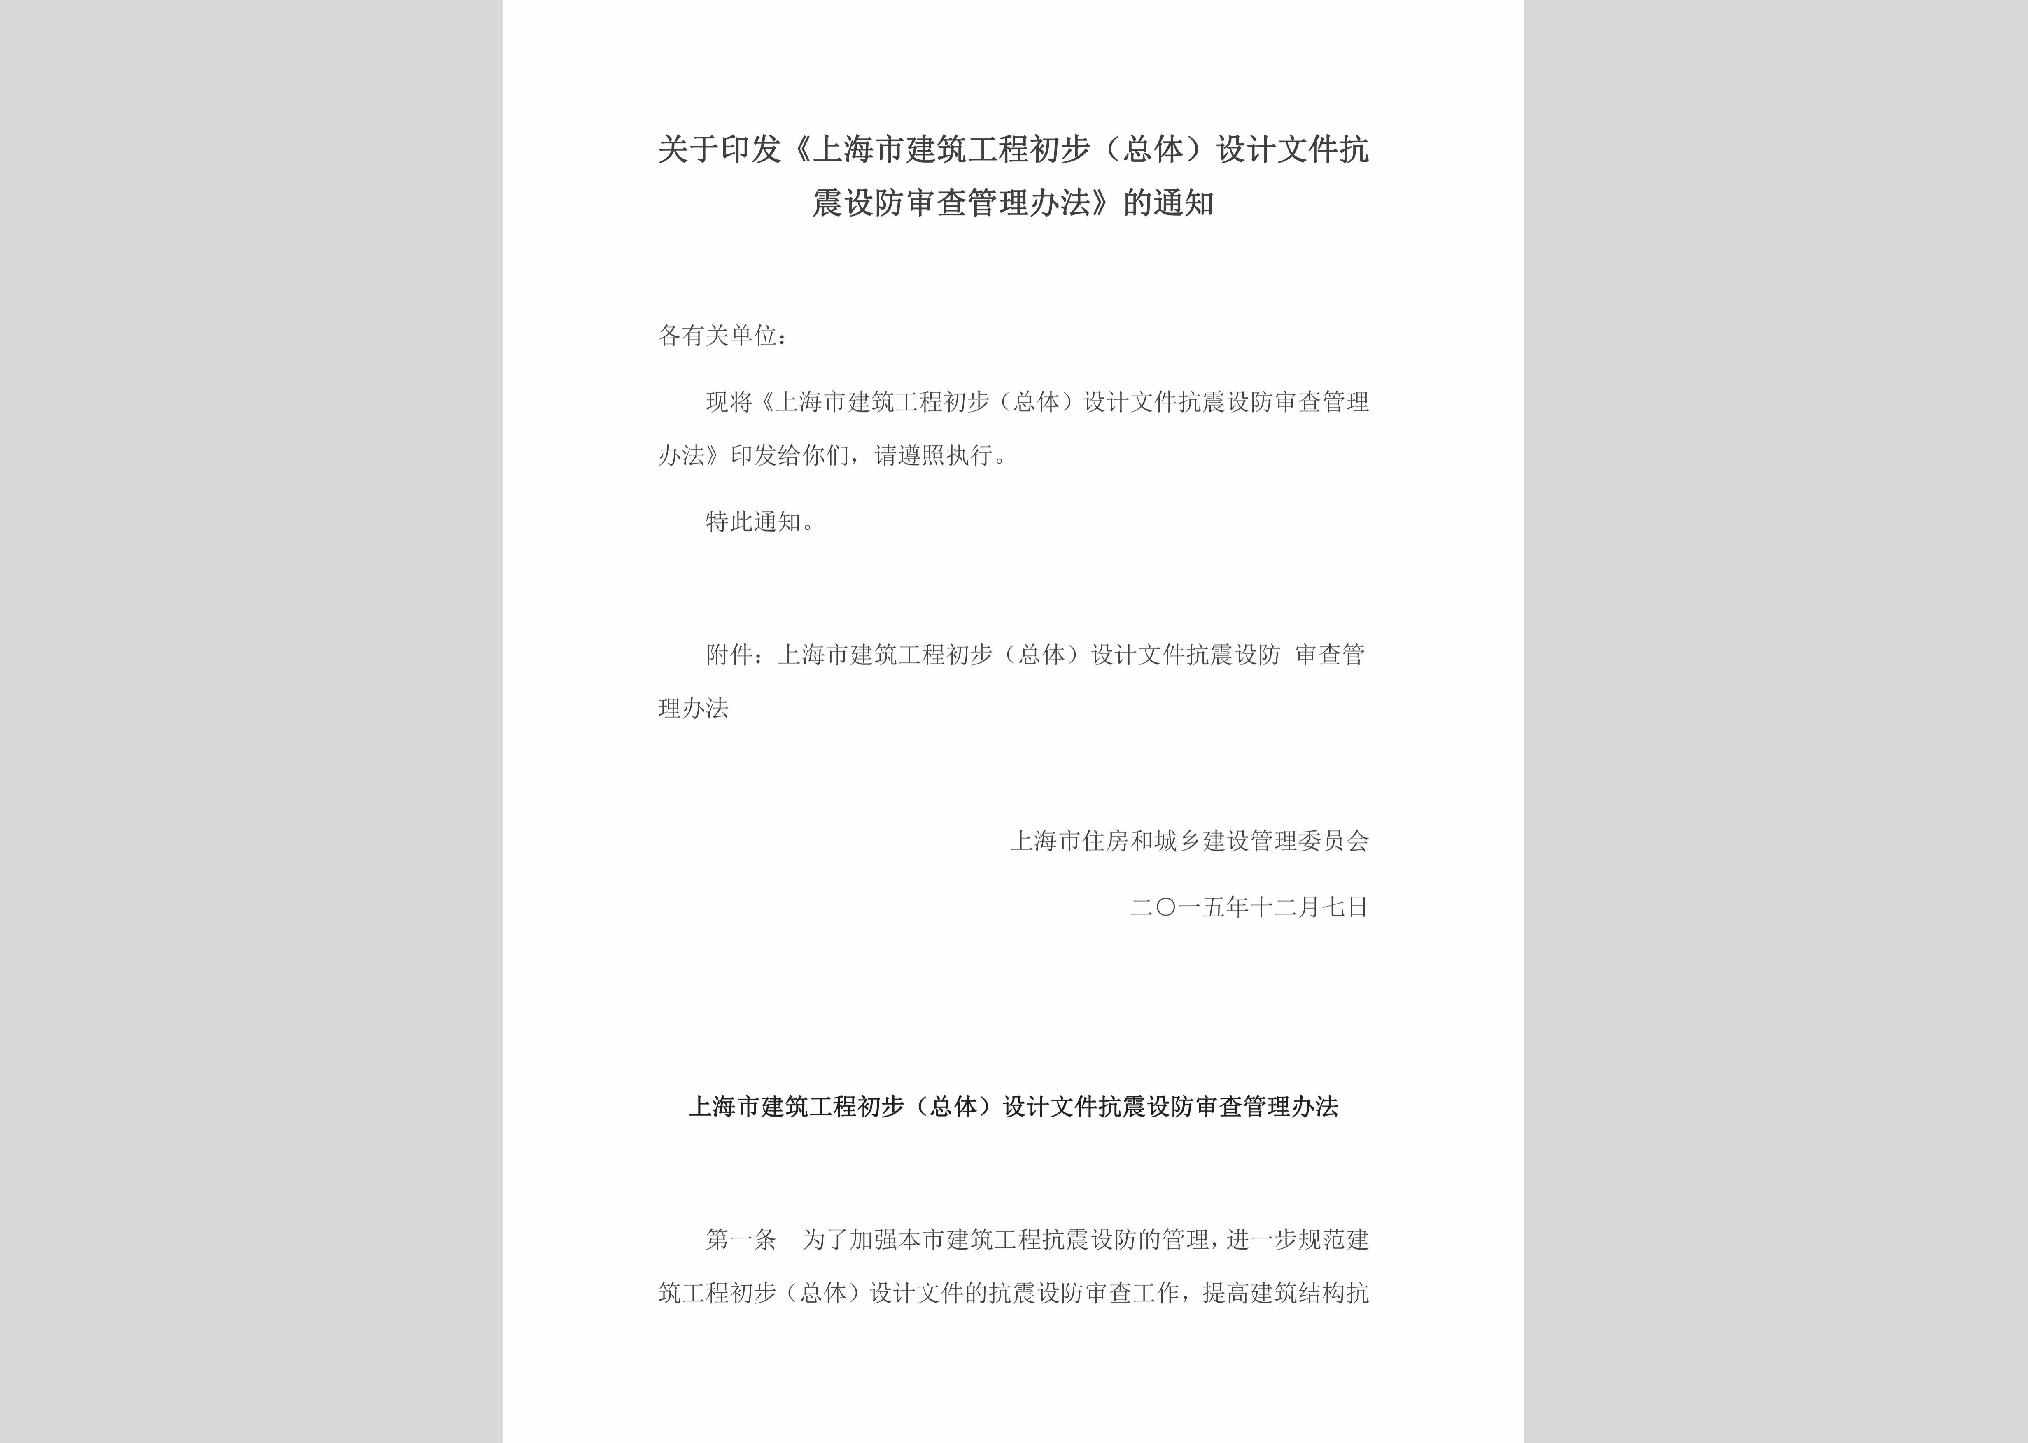 SHSJZGCC：关于印发《上海市建筑工程初步（总体）设计文件抗震设防审查管理办法》的通知